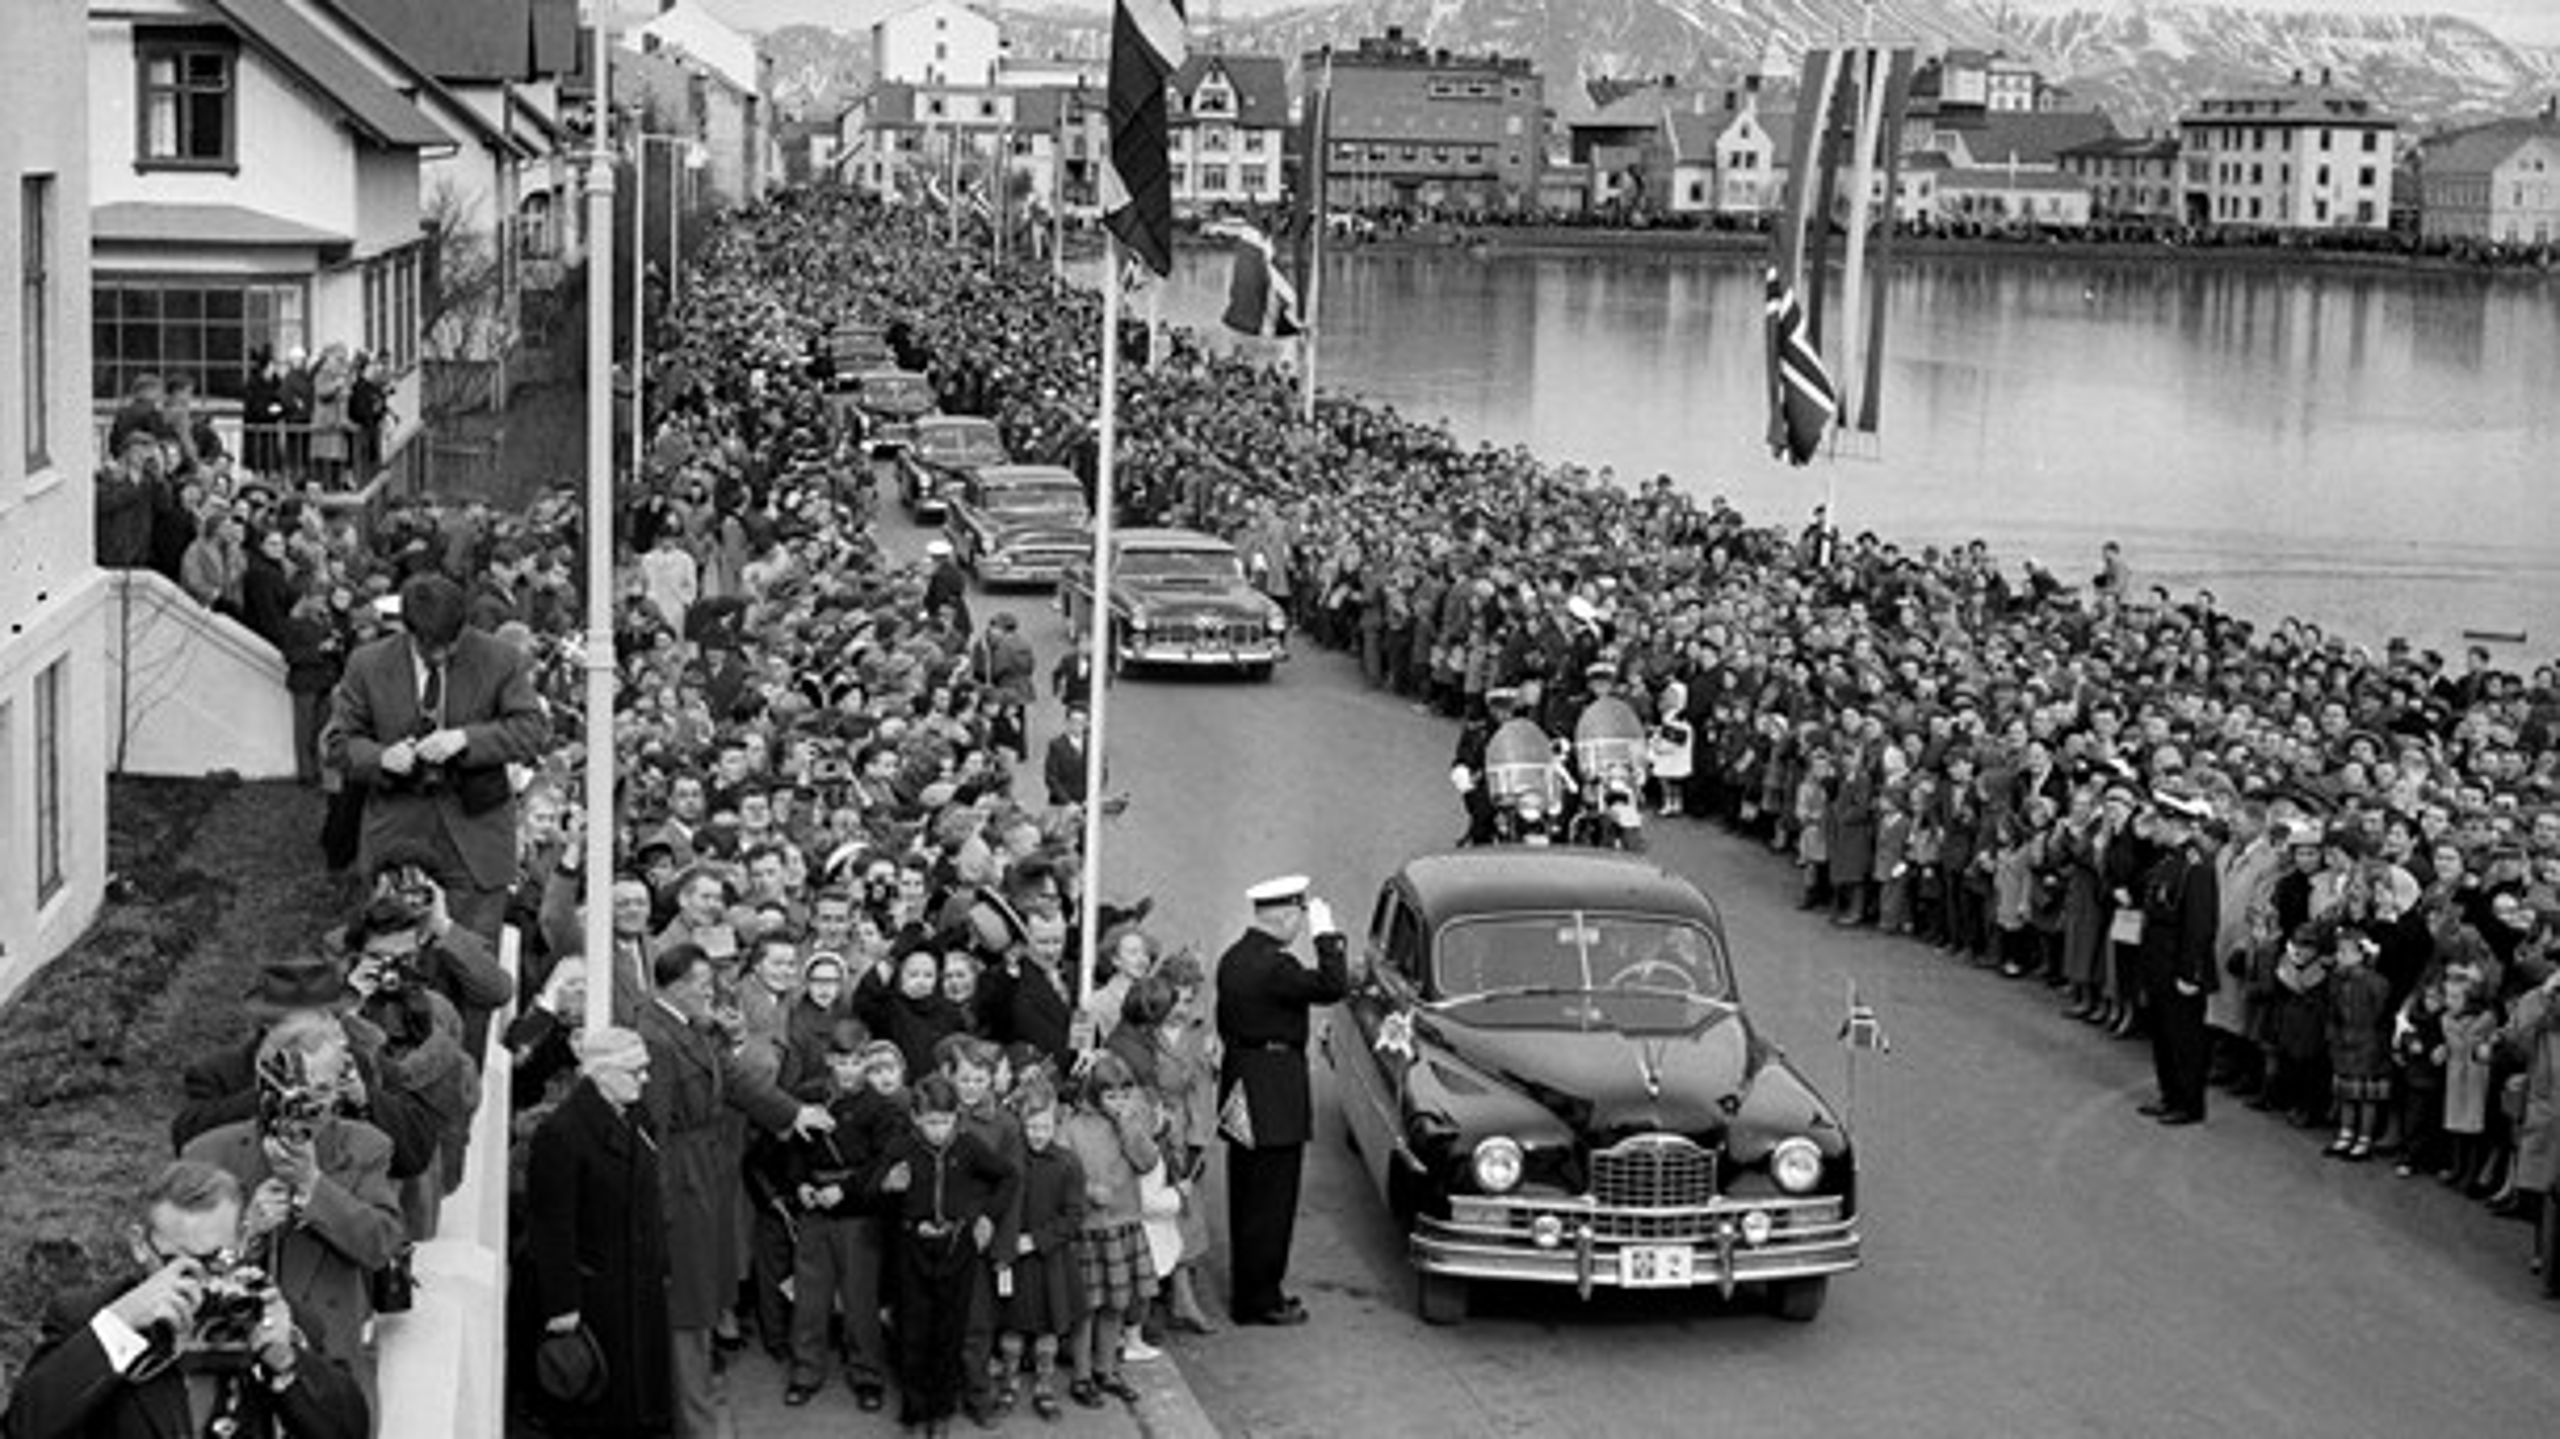 Frederik IX og dronning Ingrid&nbsp;på Island i 1956. Det var det første officielle besøg siden 1943, hvor Island trådte ud af rigsfællesskabet. I år skal Margrethe II besøge Island i anledning af 100-året for Islands løsrivelse.&nbsp;